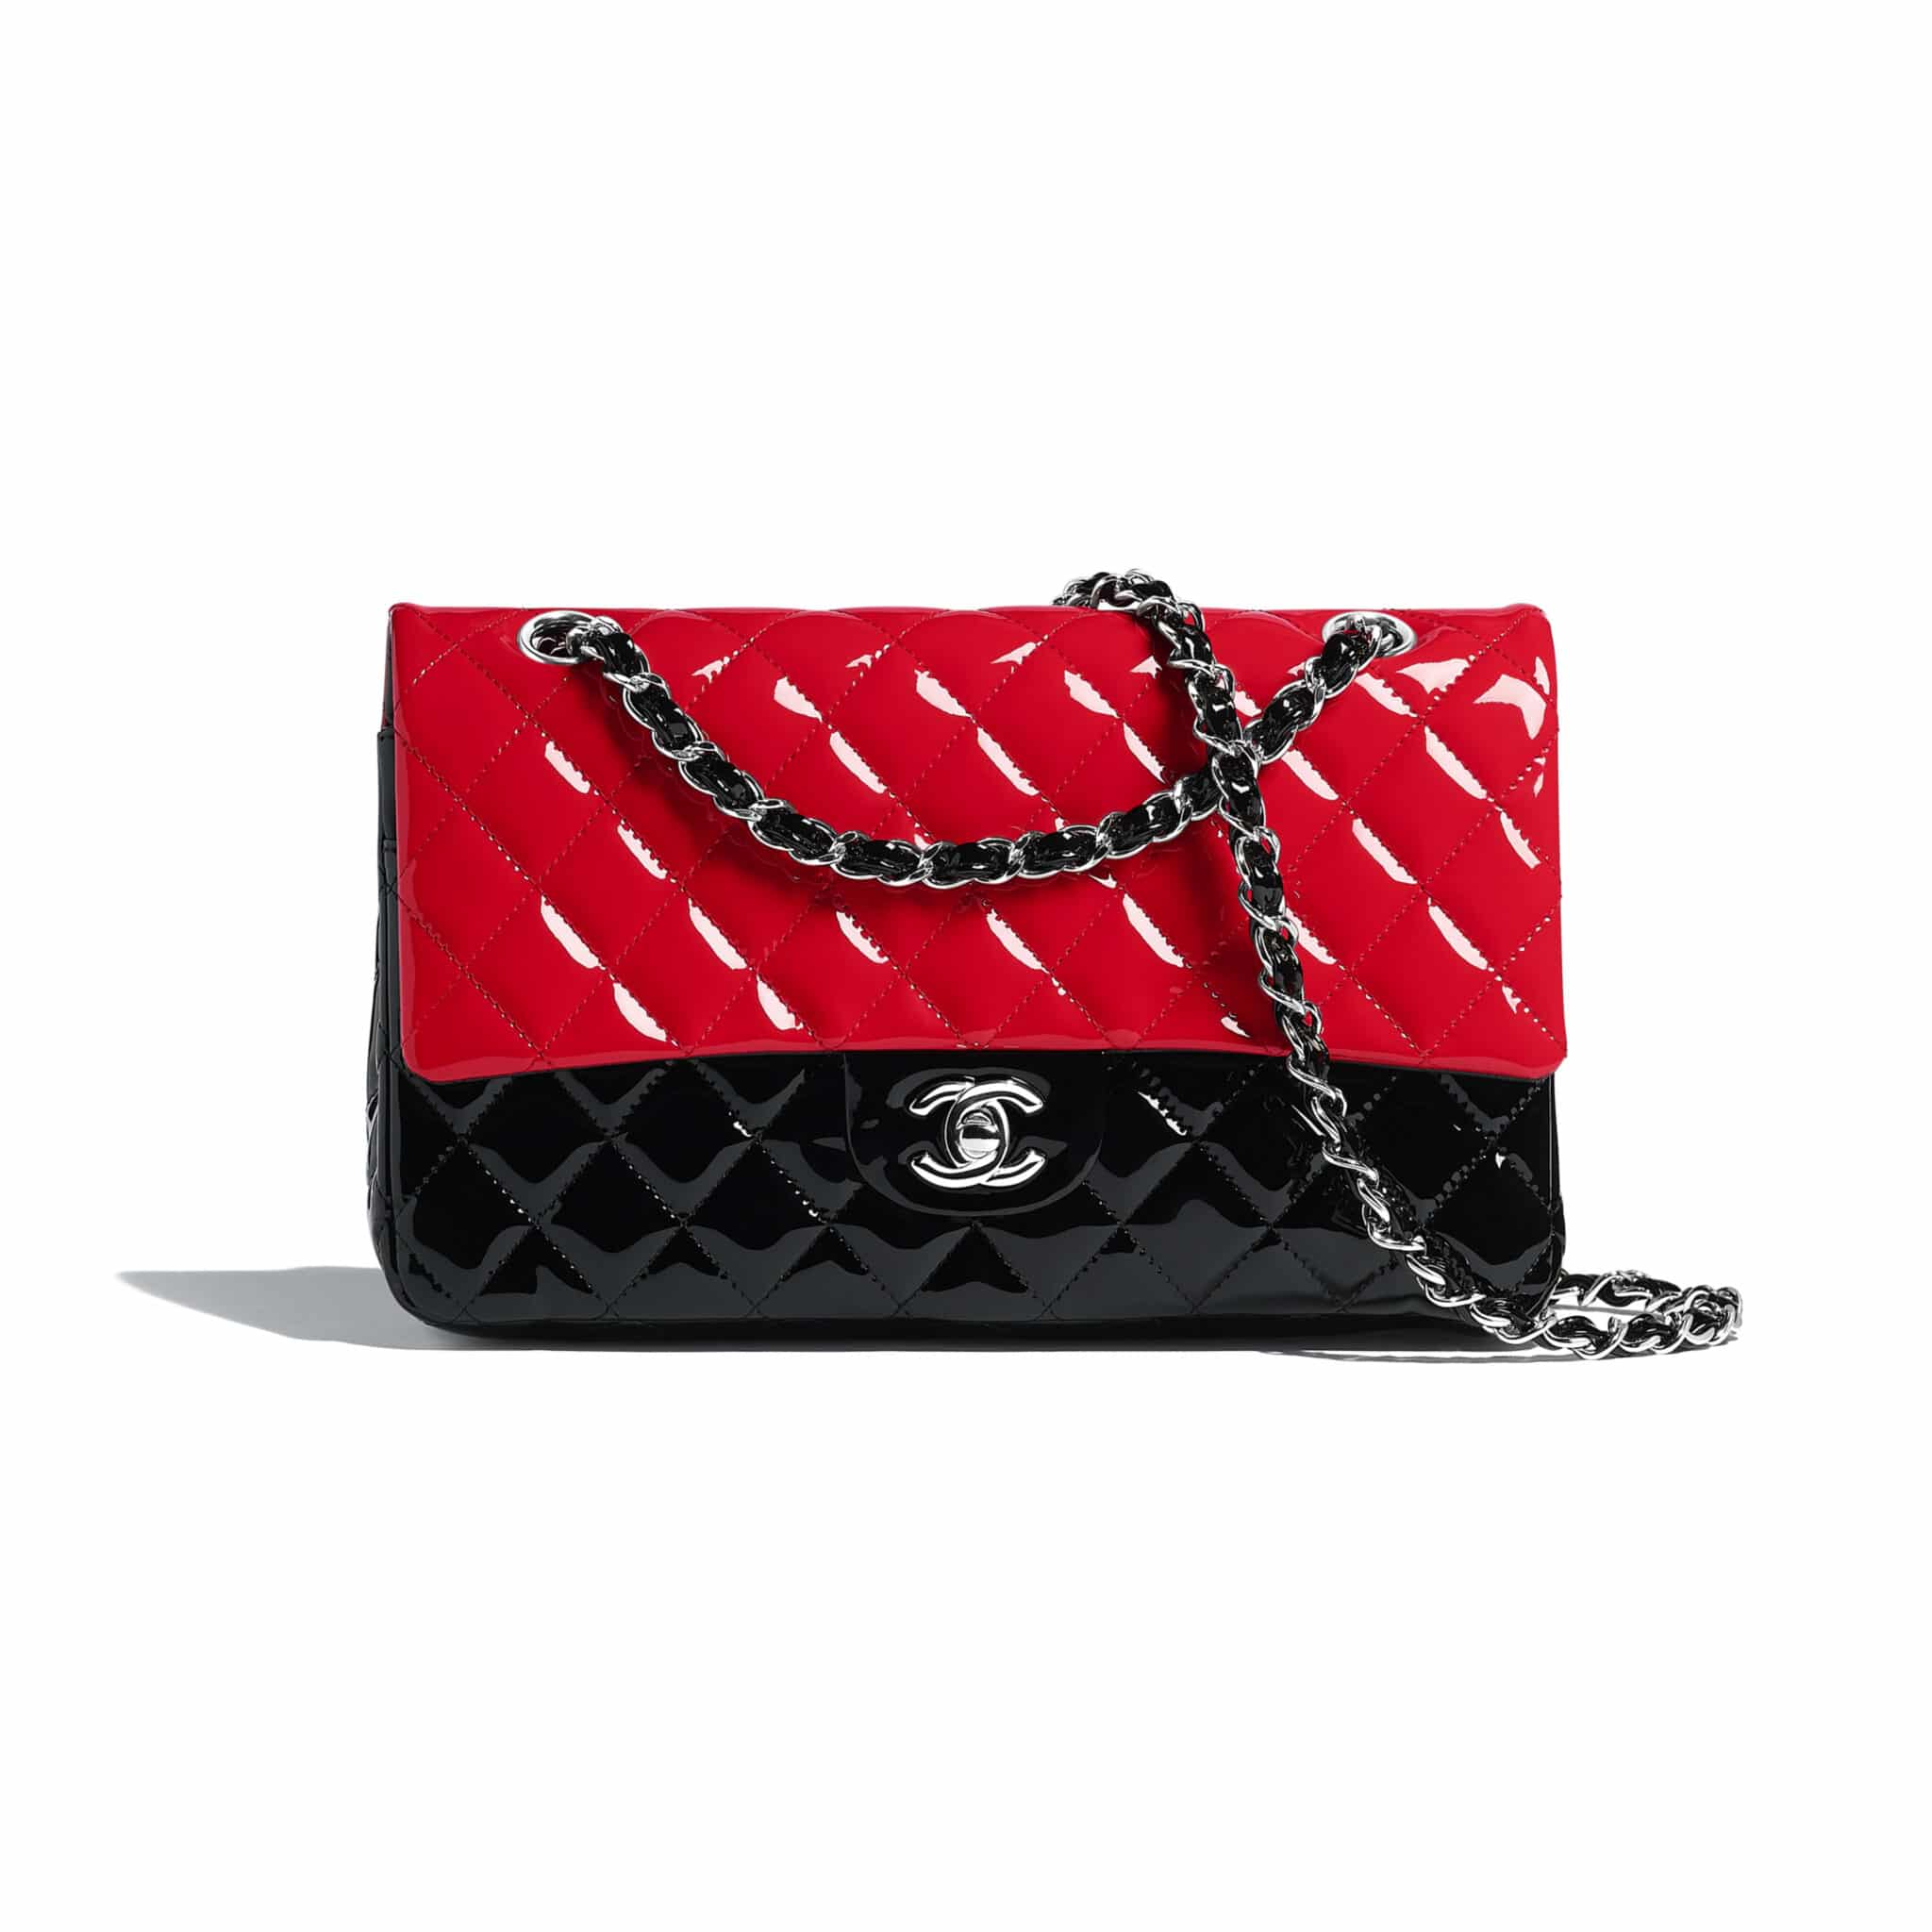 Cost Of A Chanel Handbag | IQS Executive